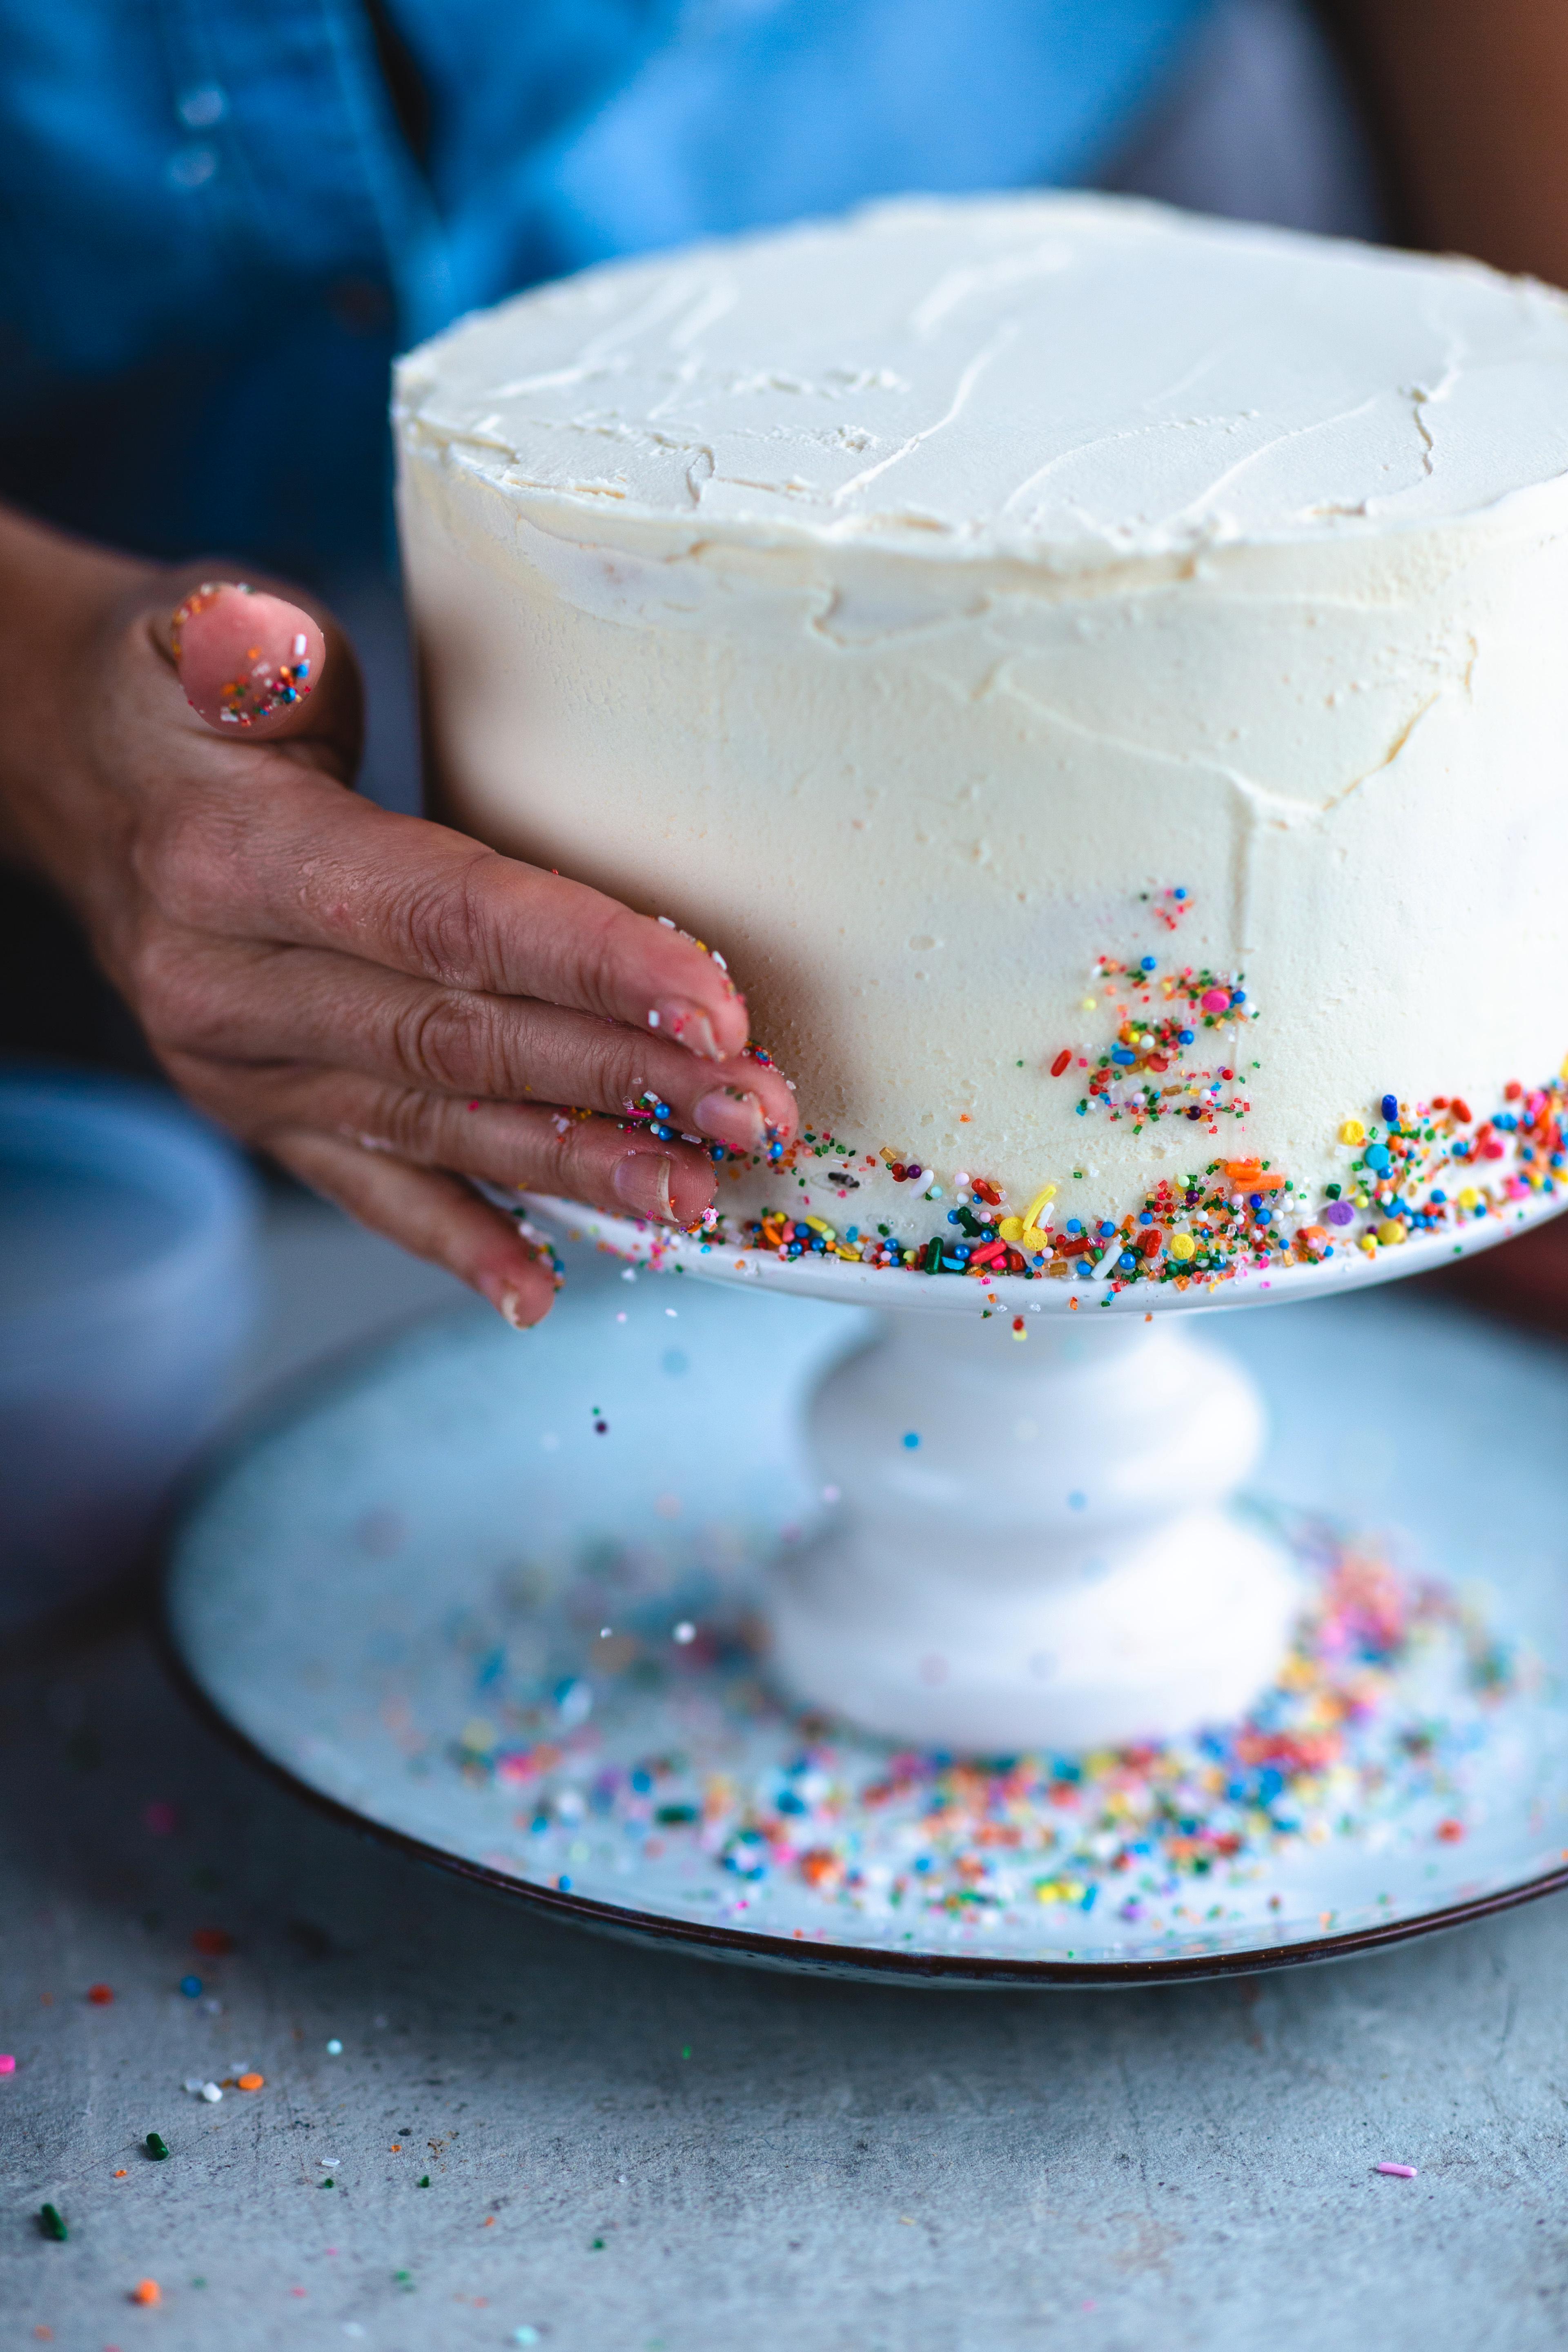 Bruk et passende fat og bygg kaken opp med litt krem mellom lagene. Prøv hele tiden å få kaken mest mulig jevn og rett. 